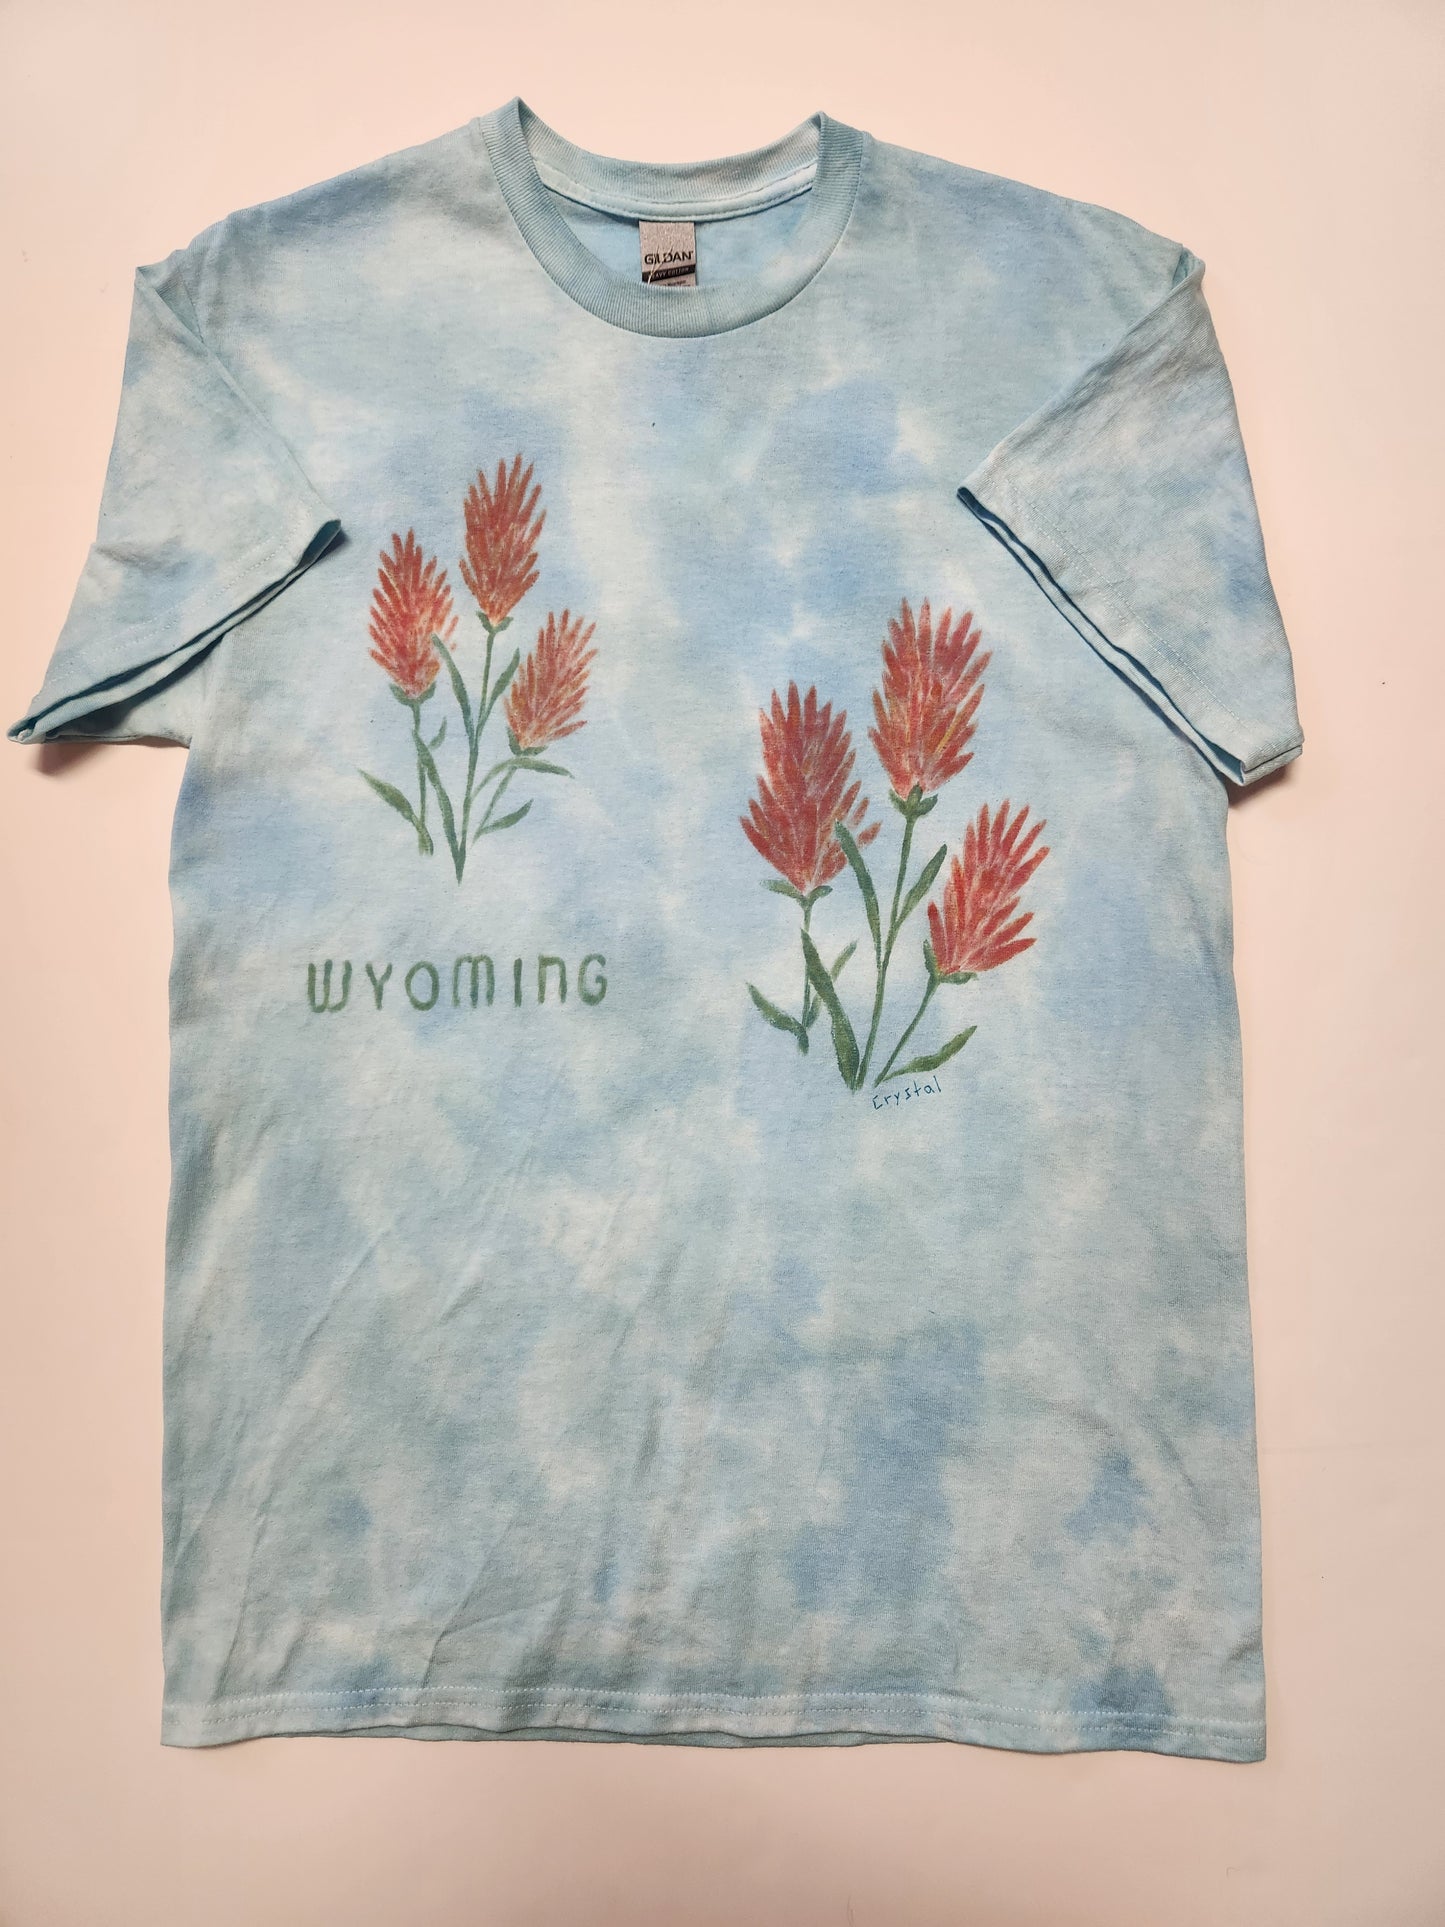 Adult Medium " Indian Paintbrush "  Wyoming Tee Shirt